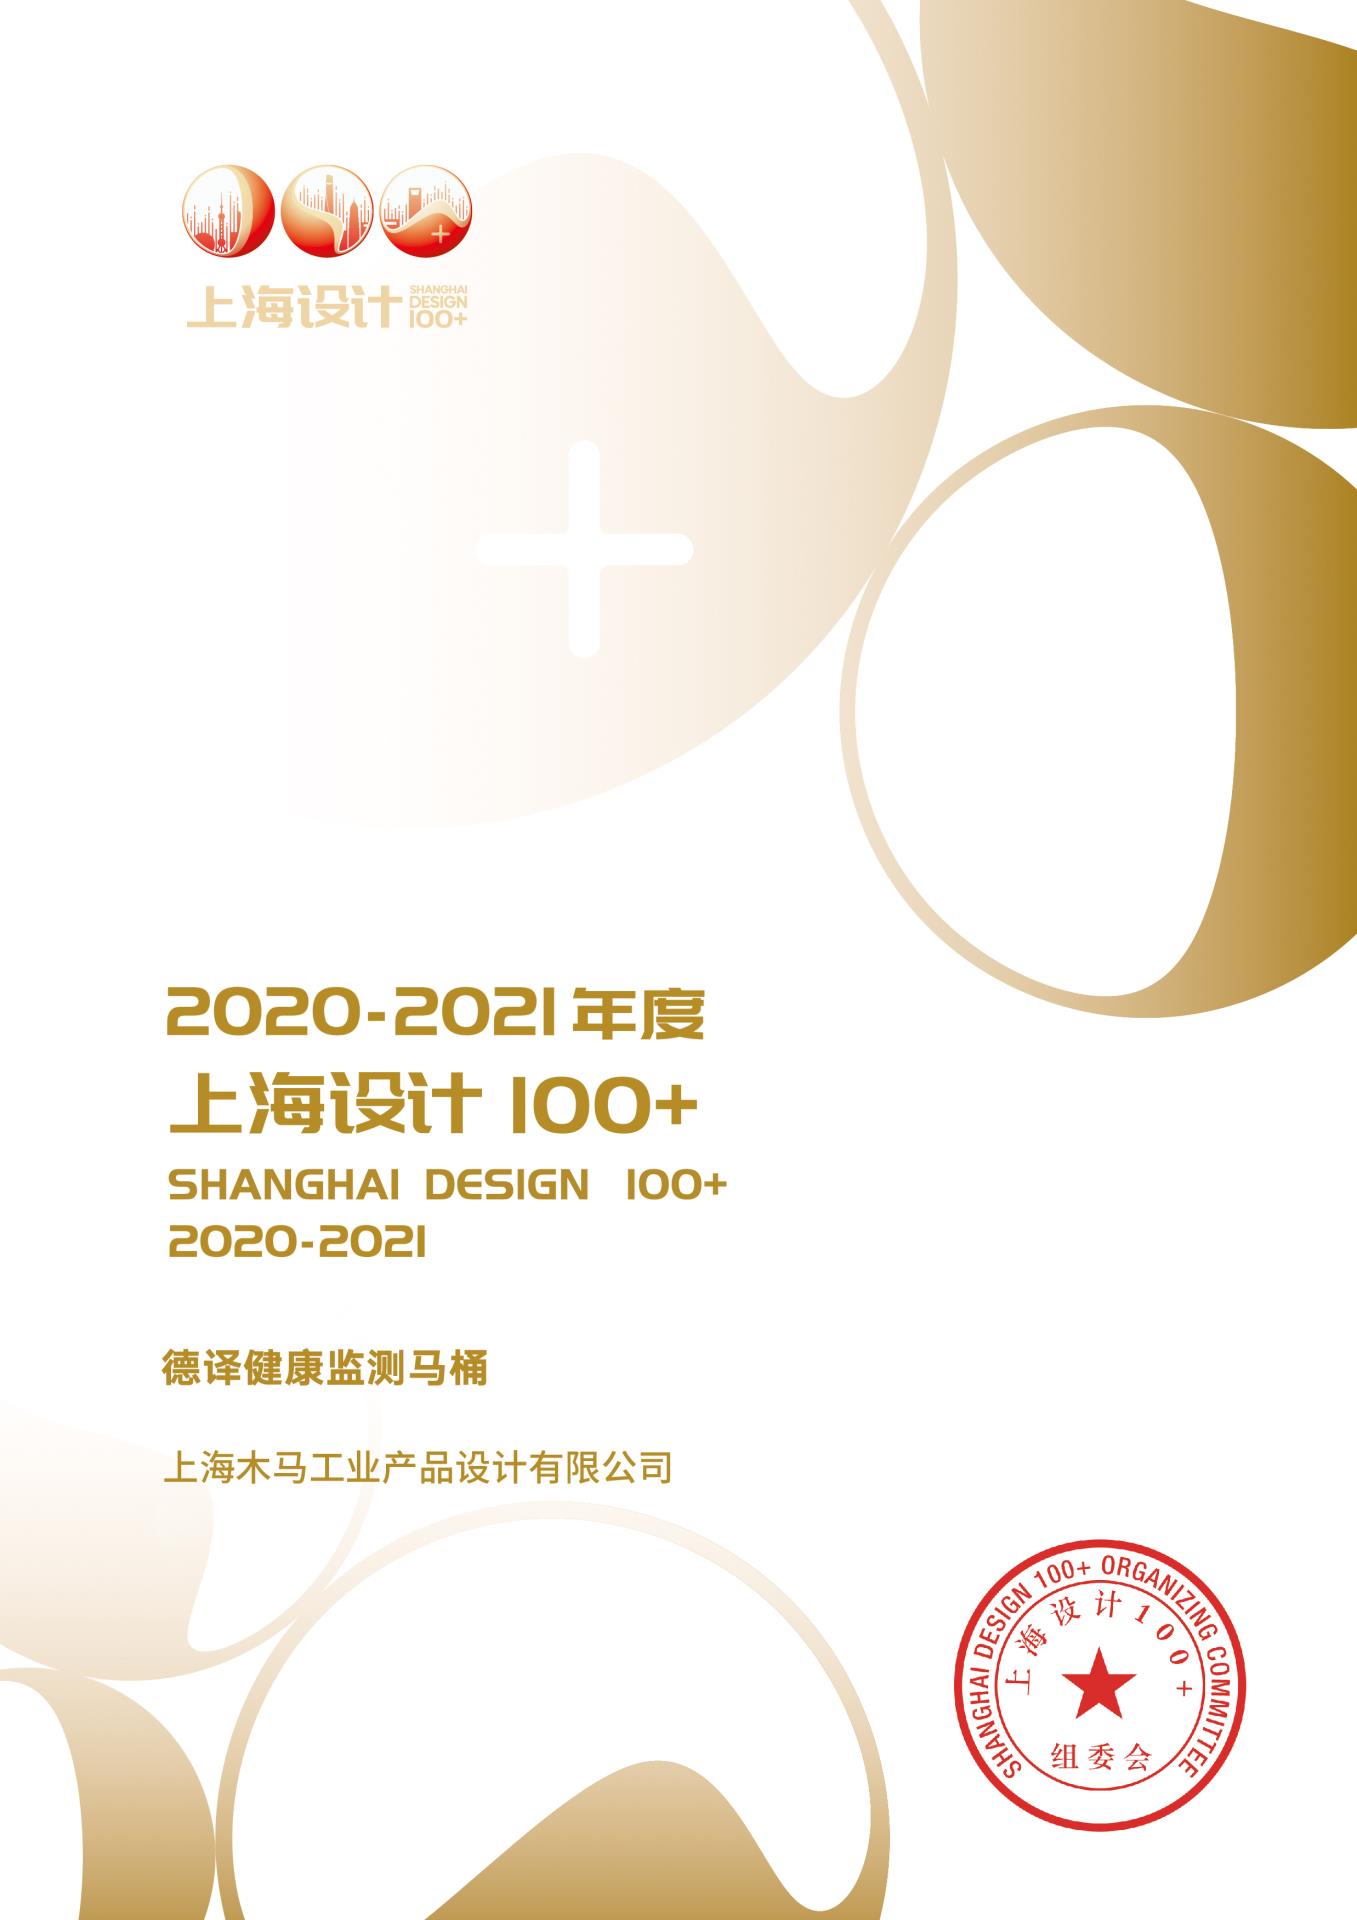 22 2021 上海设计100+ 《德译健康监测马桶》获奖作品.jpg